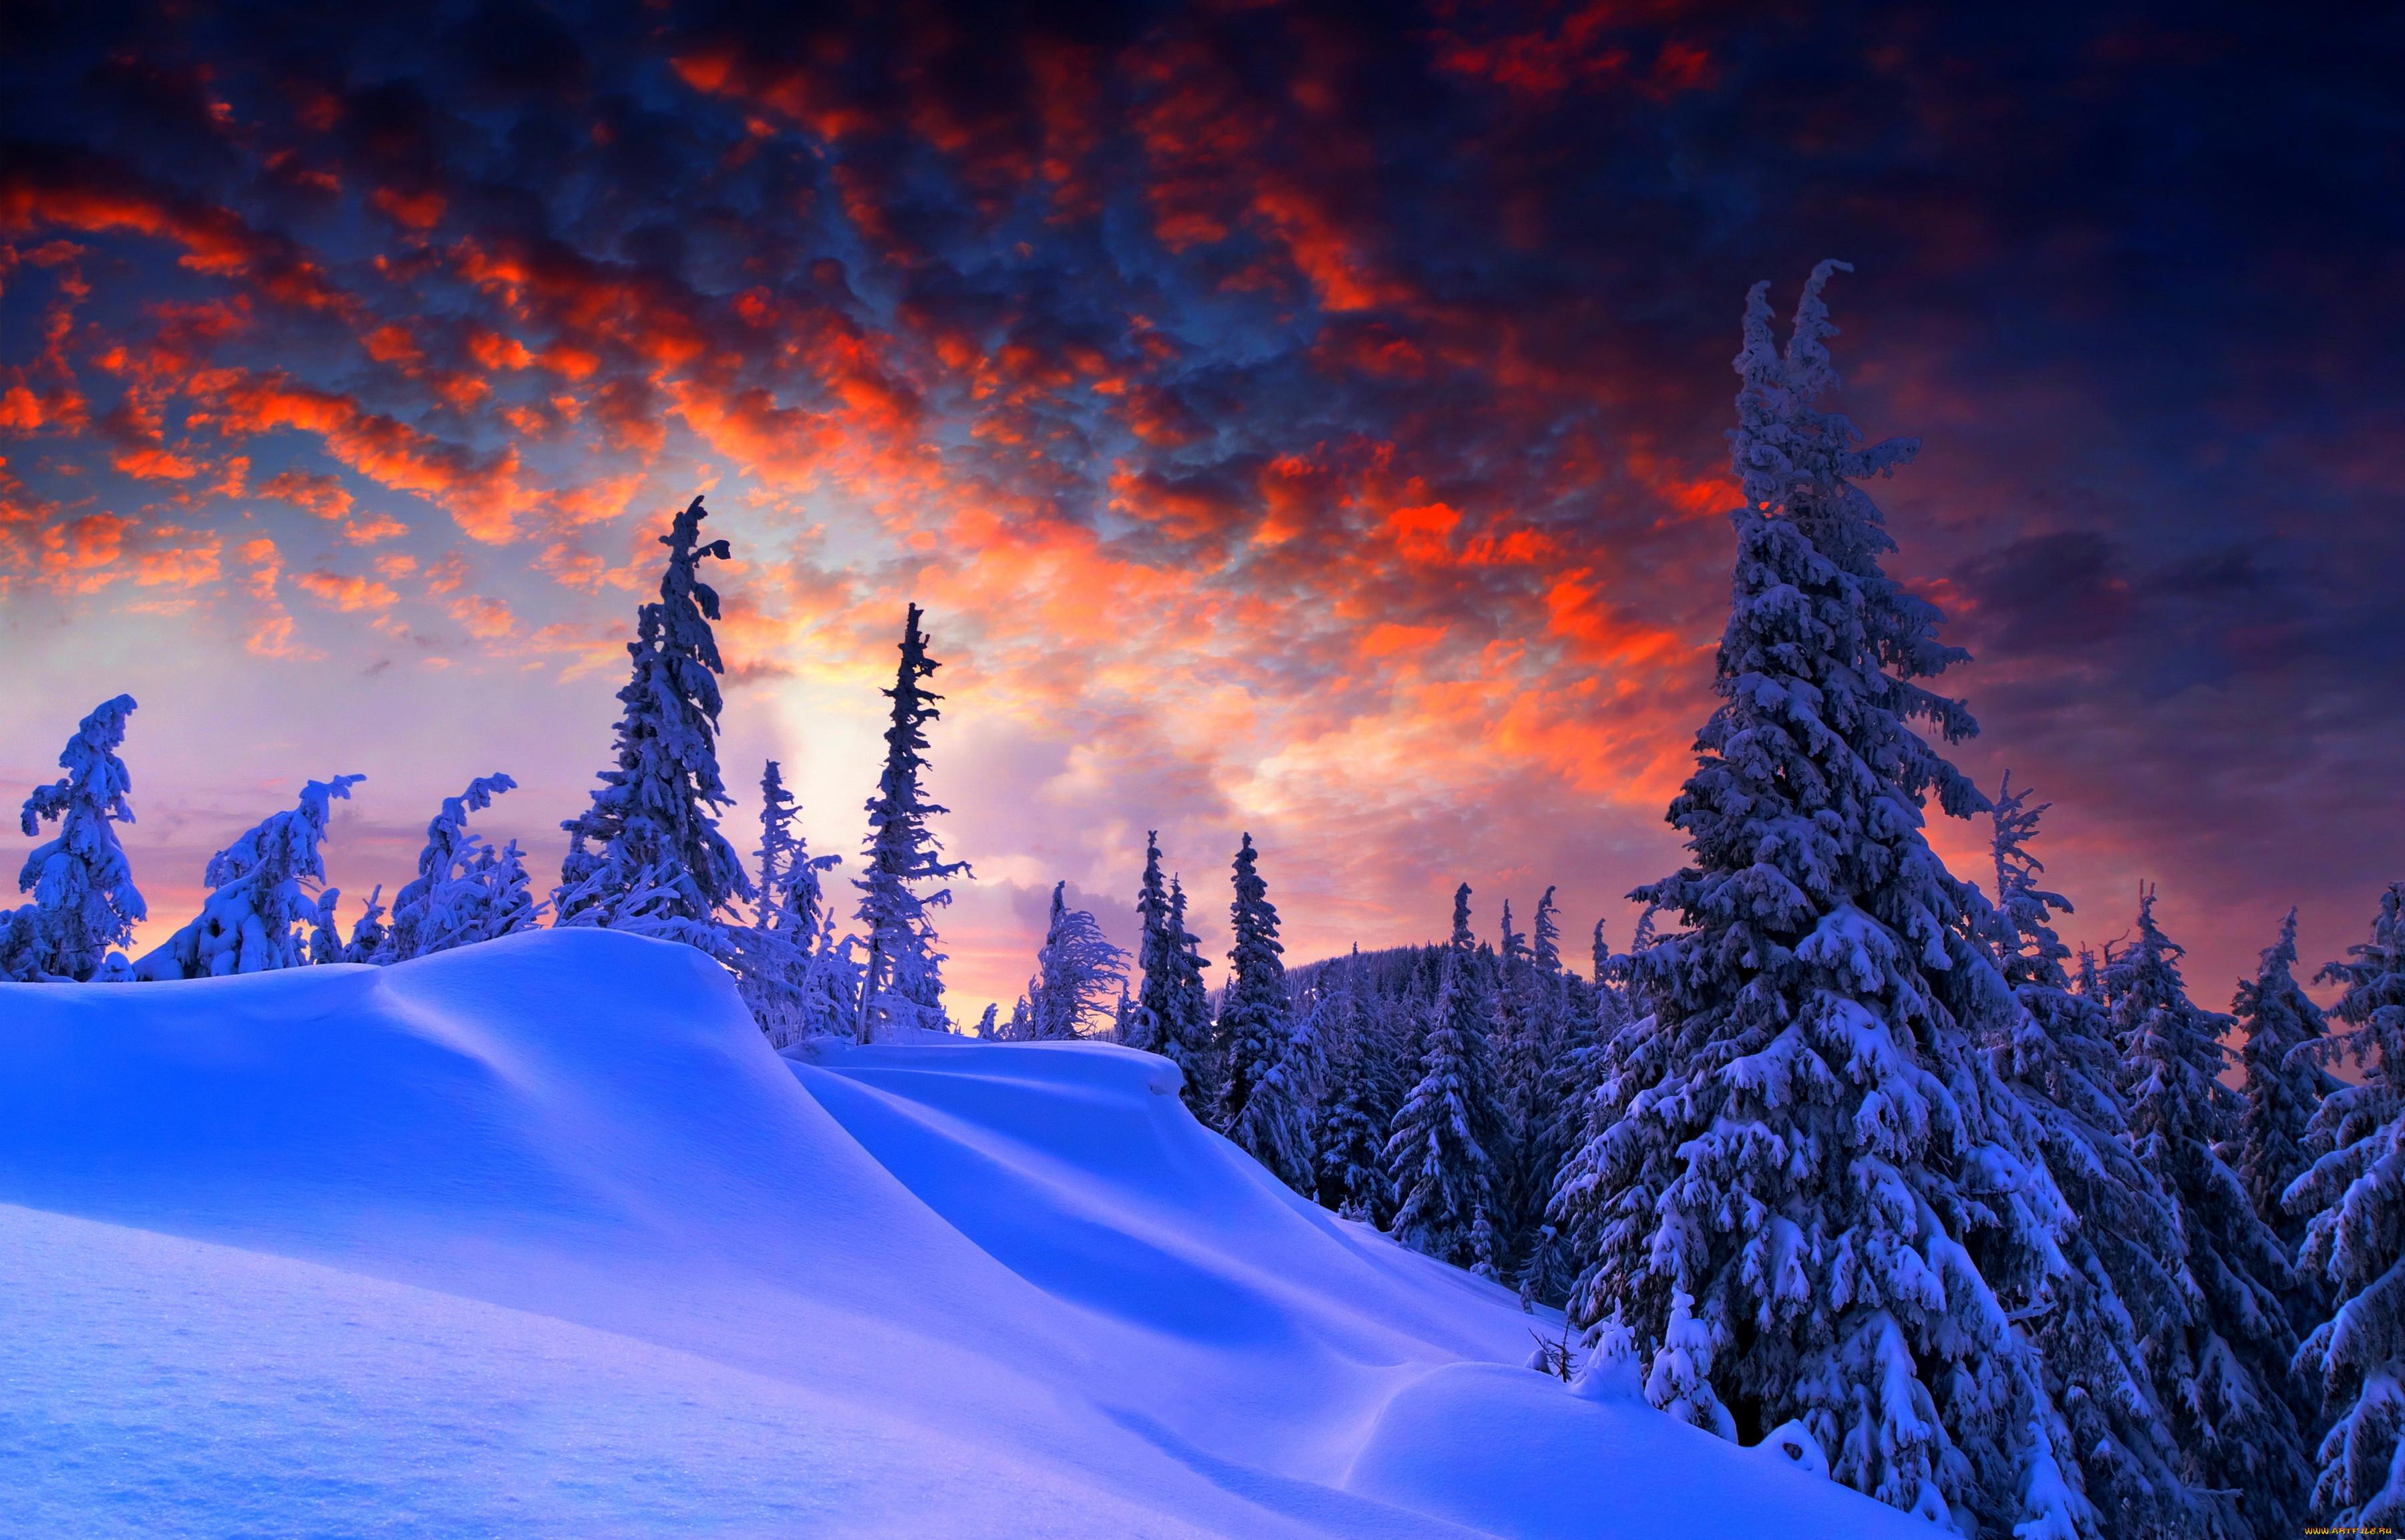 Обои Природа Зима, обои для рабочего стола, фотографии природа, зима, ели,  снег, небо, лес Обои для рабочего стола, скачать обои картинки заставки на  рабочий стол.